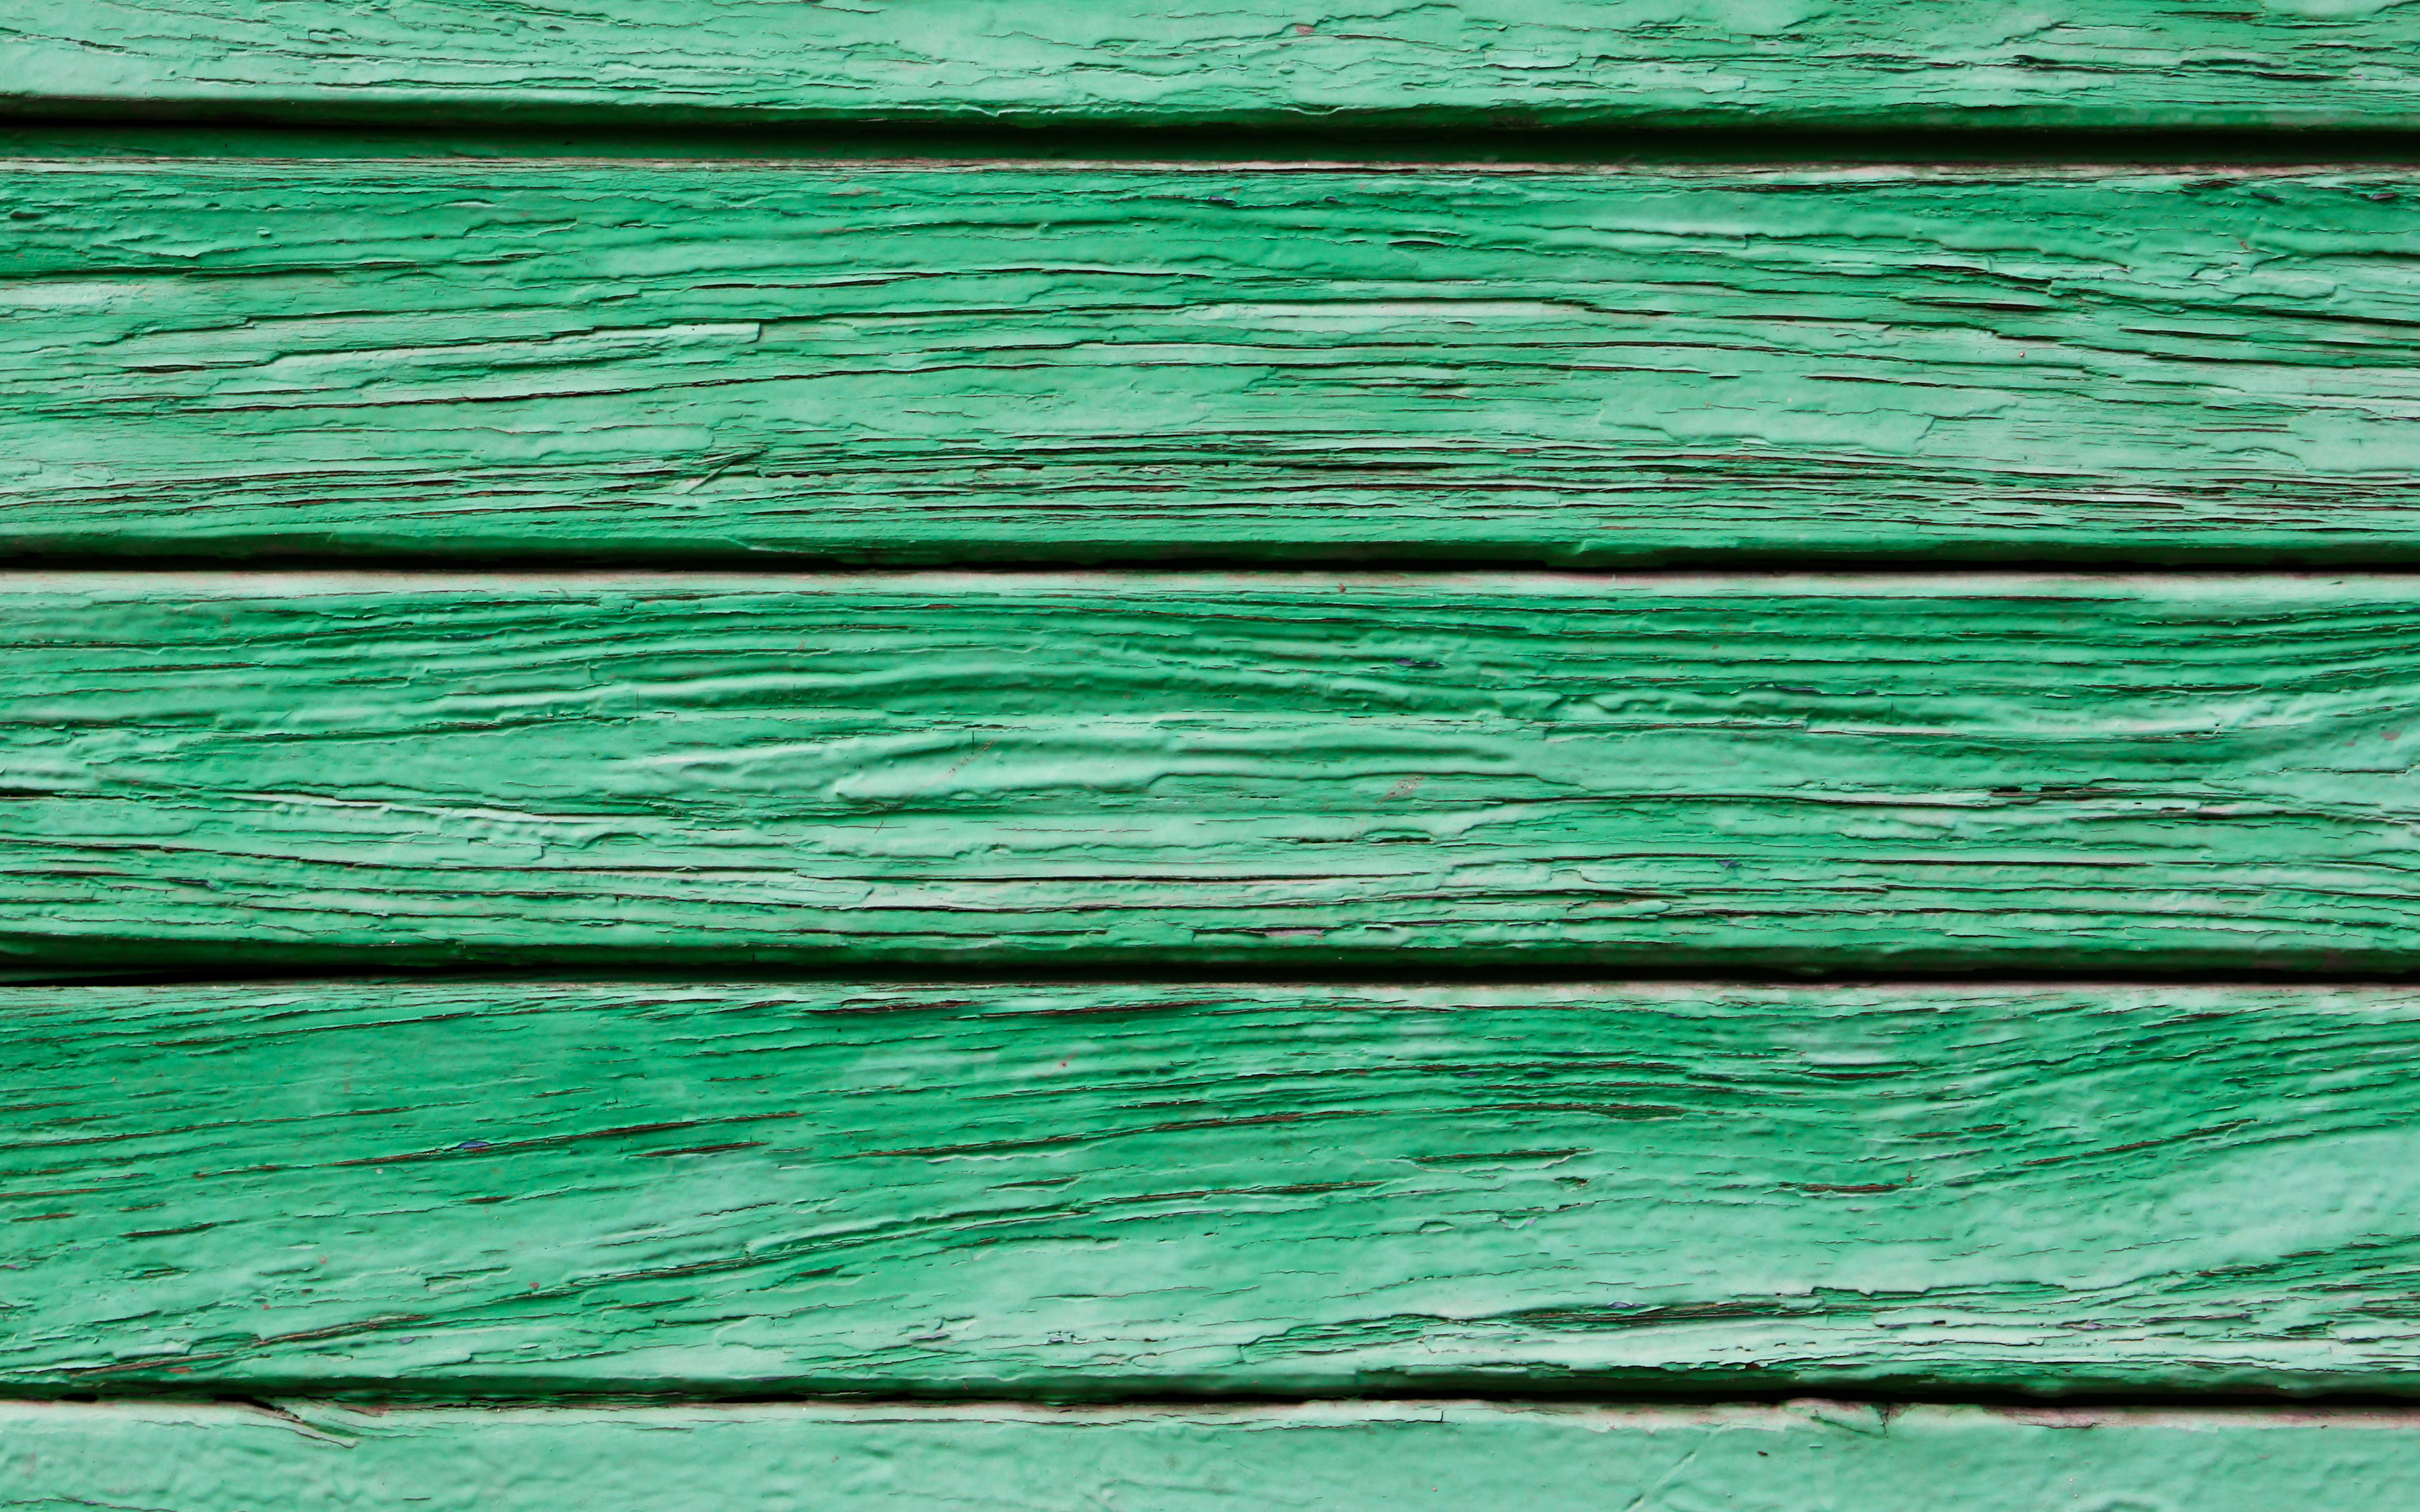 Cập nhật ngay hình nền gỗ xanh đang được yêu thích nhất hiện nay. Với gam màu thanh lịch, phong cách tự nhiên, bạn sẽ có một nền tảng hoàn hảo để sáng tạo và truyền cảm hứng. Hình nền gỗ xanh còn đảm bảo sức khỏe cho mắt của bạn, chắc chắn sẽ làm bạn thích thú và tập trung hơn.